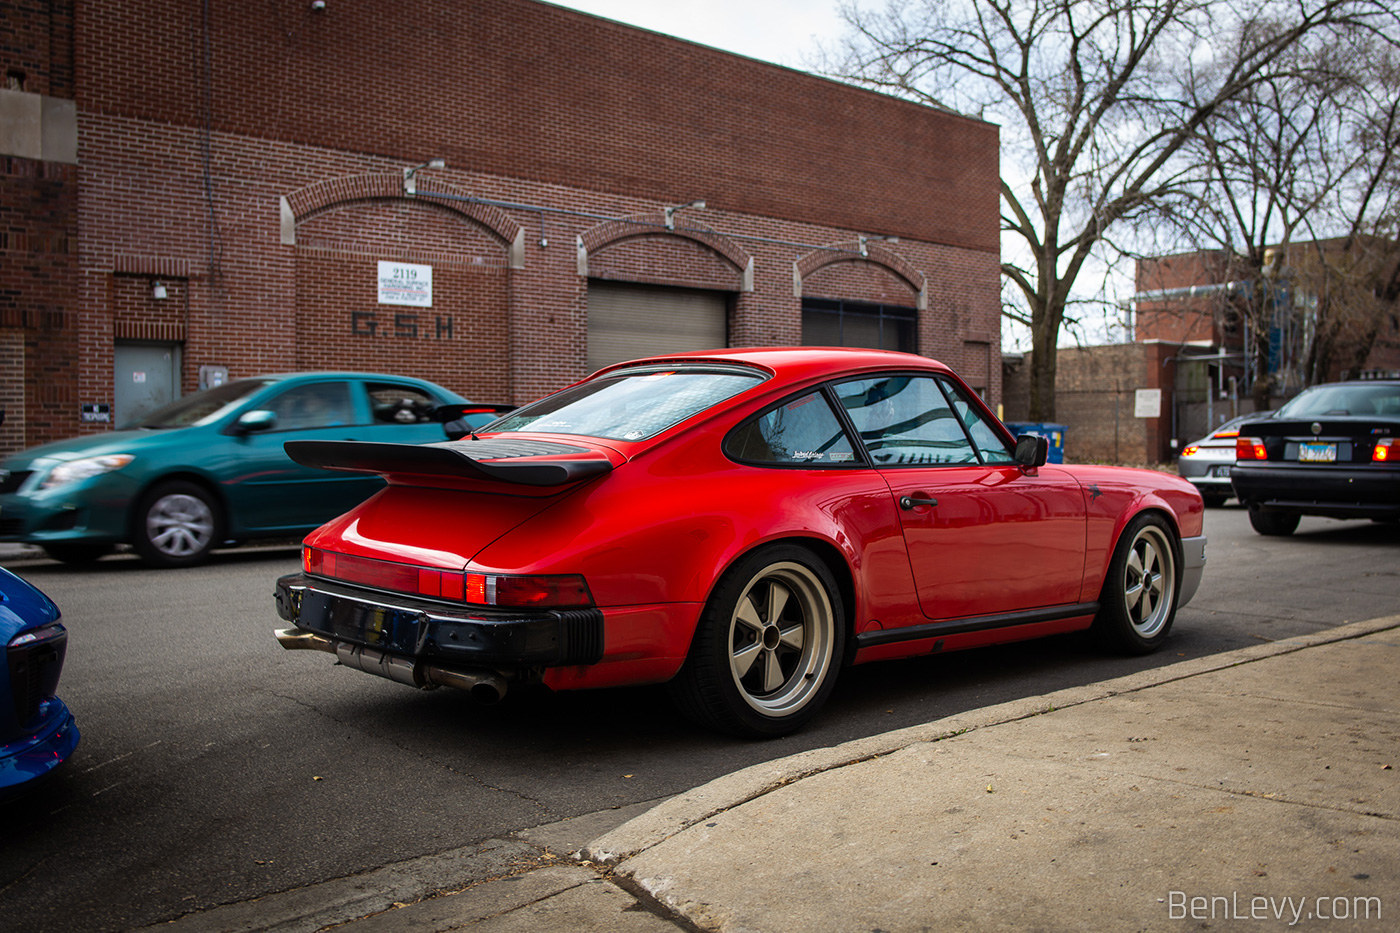 Red Porsche 911 on the Street in Chicago